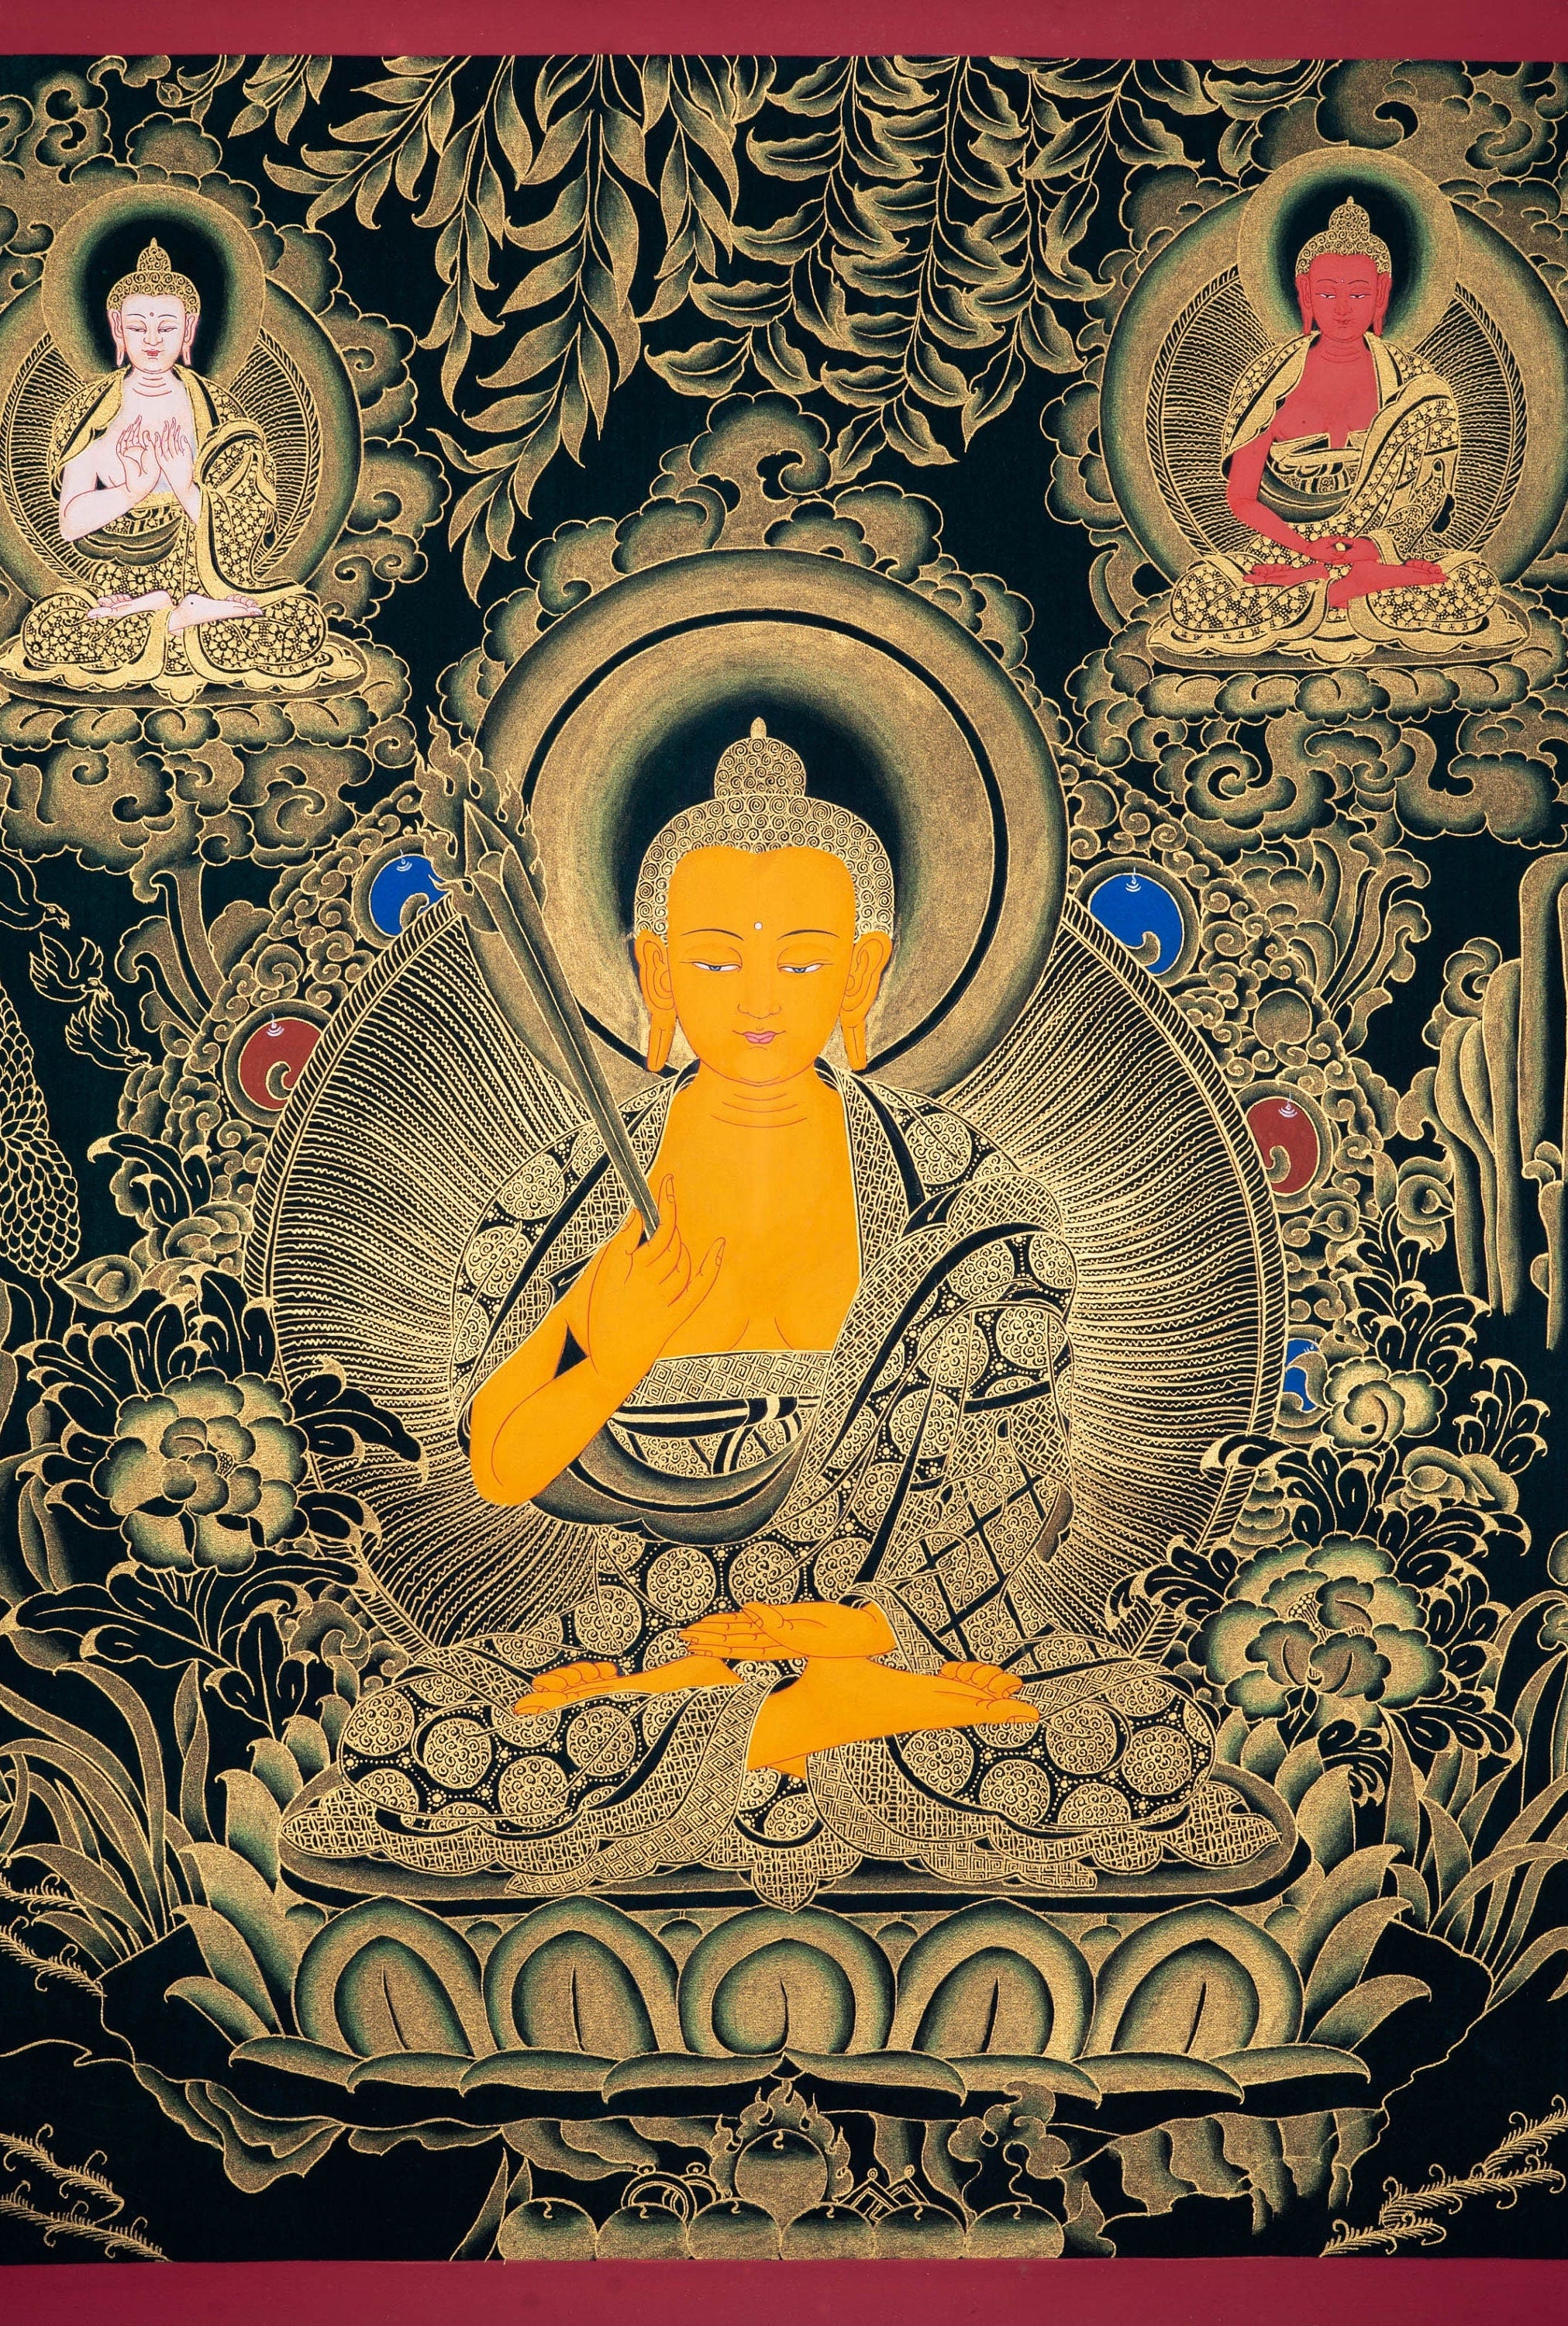 Beautiful Thangka Painting of Shakyamuni Buddha - Lucky Thanka